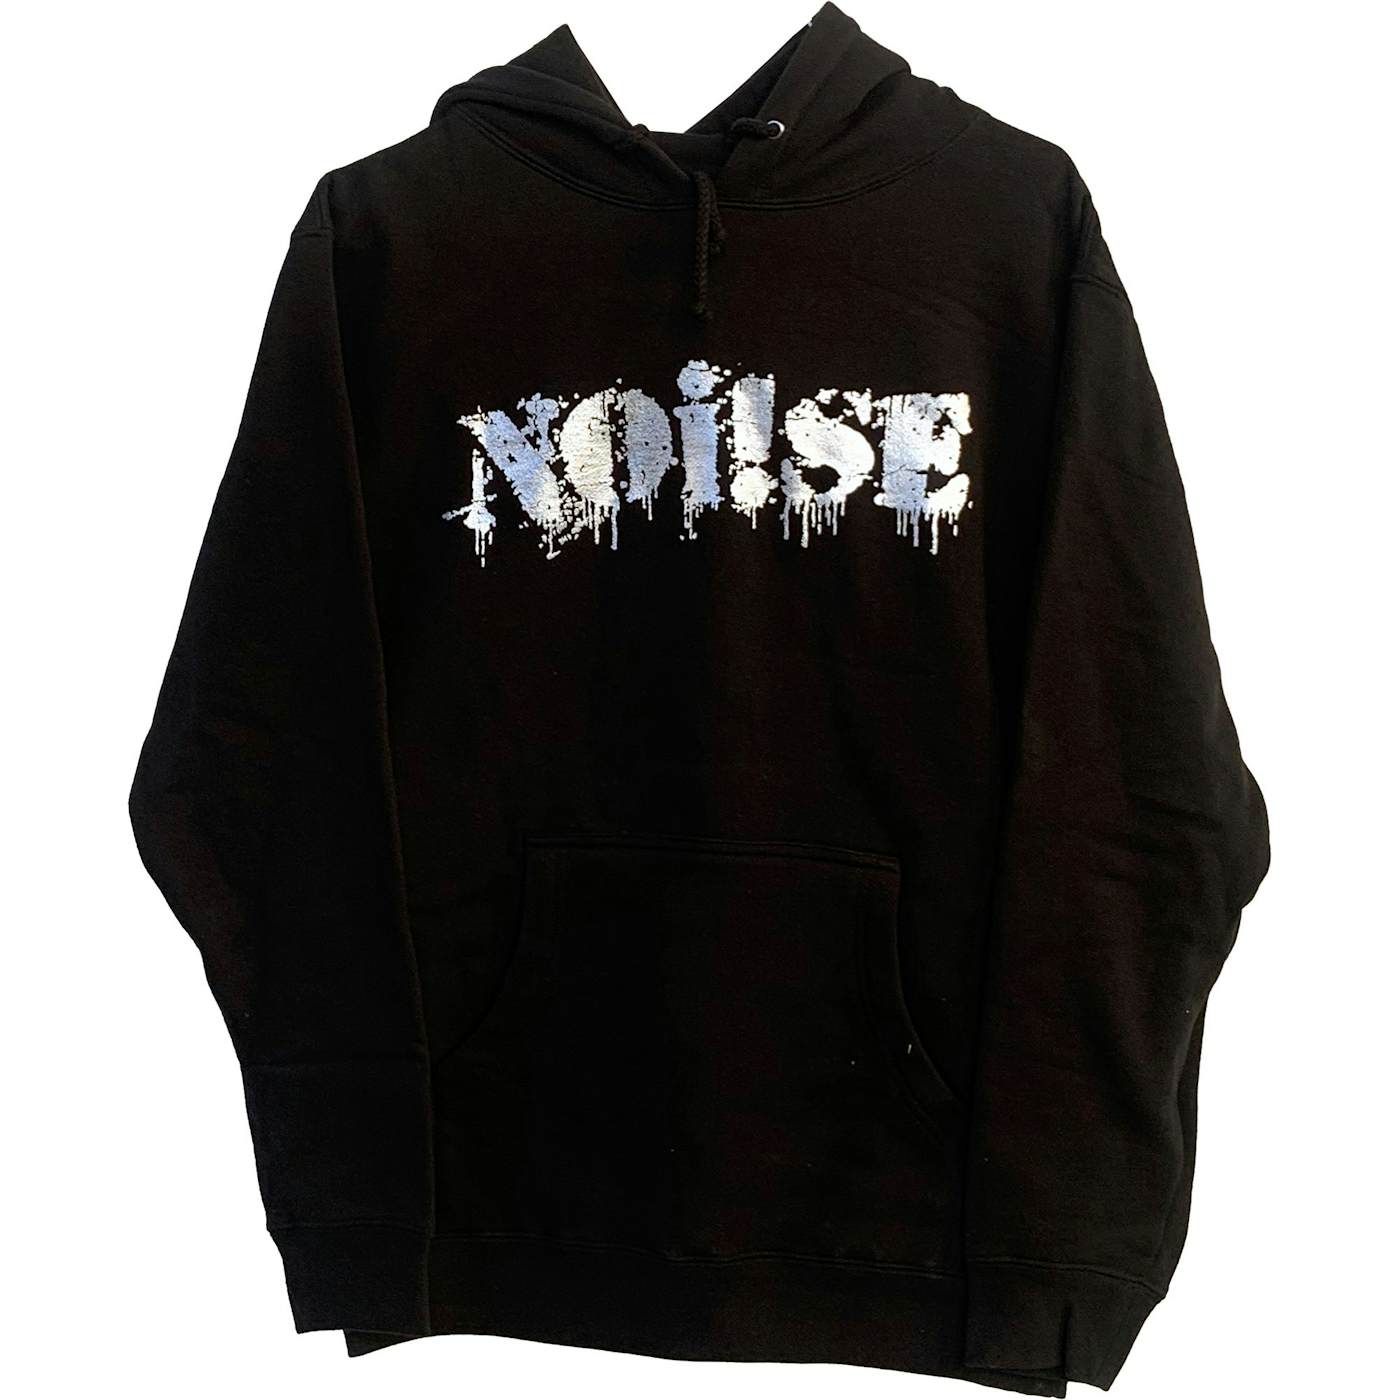 NOi!SE - Logo - Silver on Black - Hooded Sweatshirt